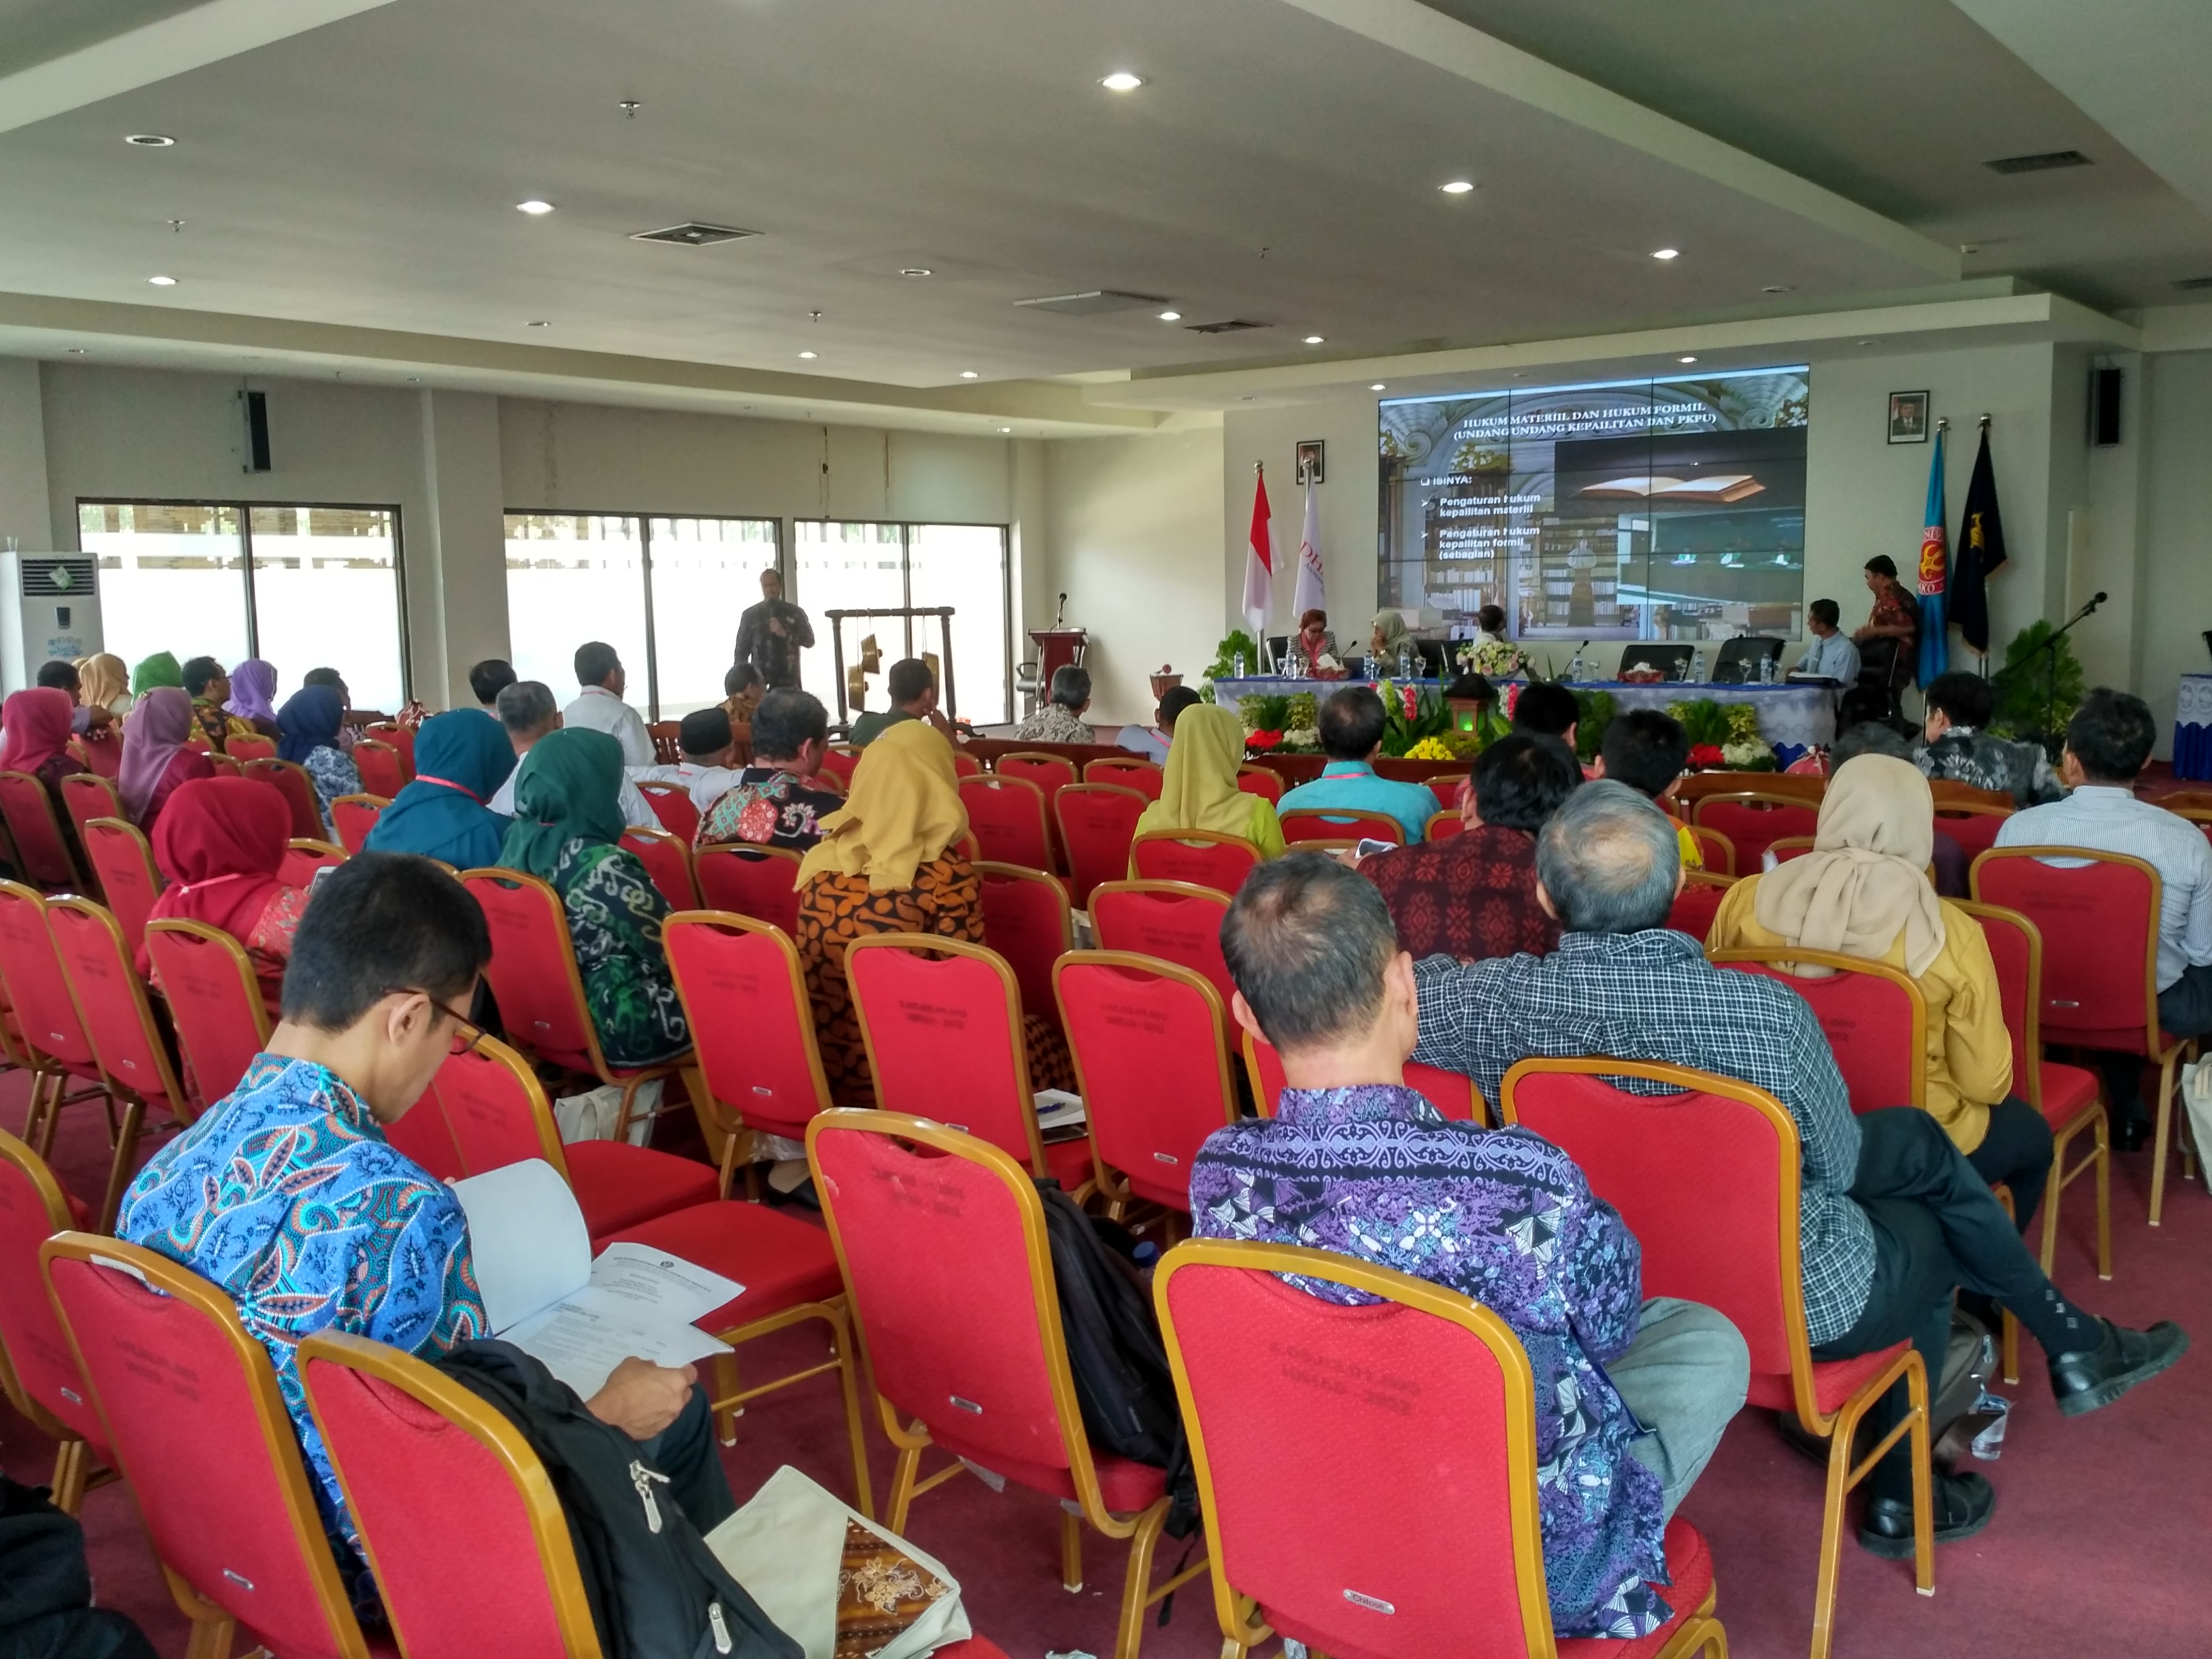 “ Konferensi ini adalah konferensi yang di selenggarakan oleh persatuan dosen hukum acara perdata dari perguruan tinggi negeri dan swasta se Indonesia yang